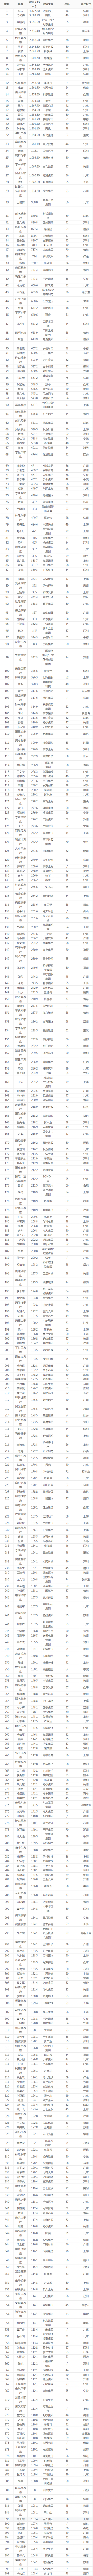 2020年富豪中国排行榜_胡润2020年中国富豪榜上海前40位排名,黄铮居首,浙商占5分之二